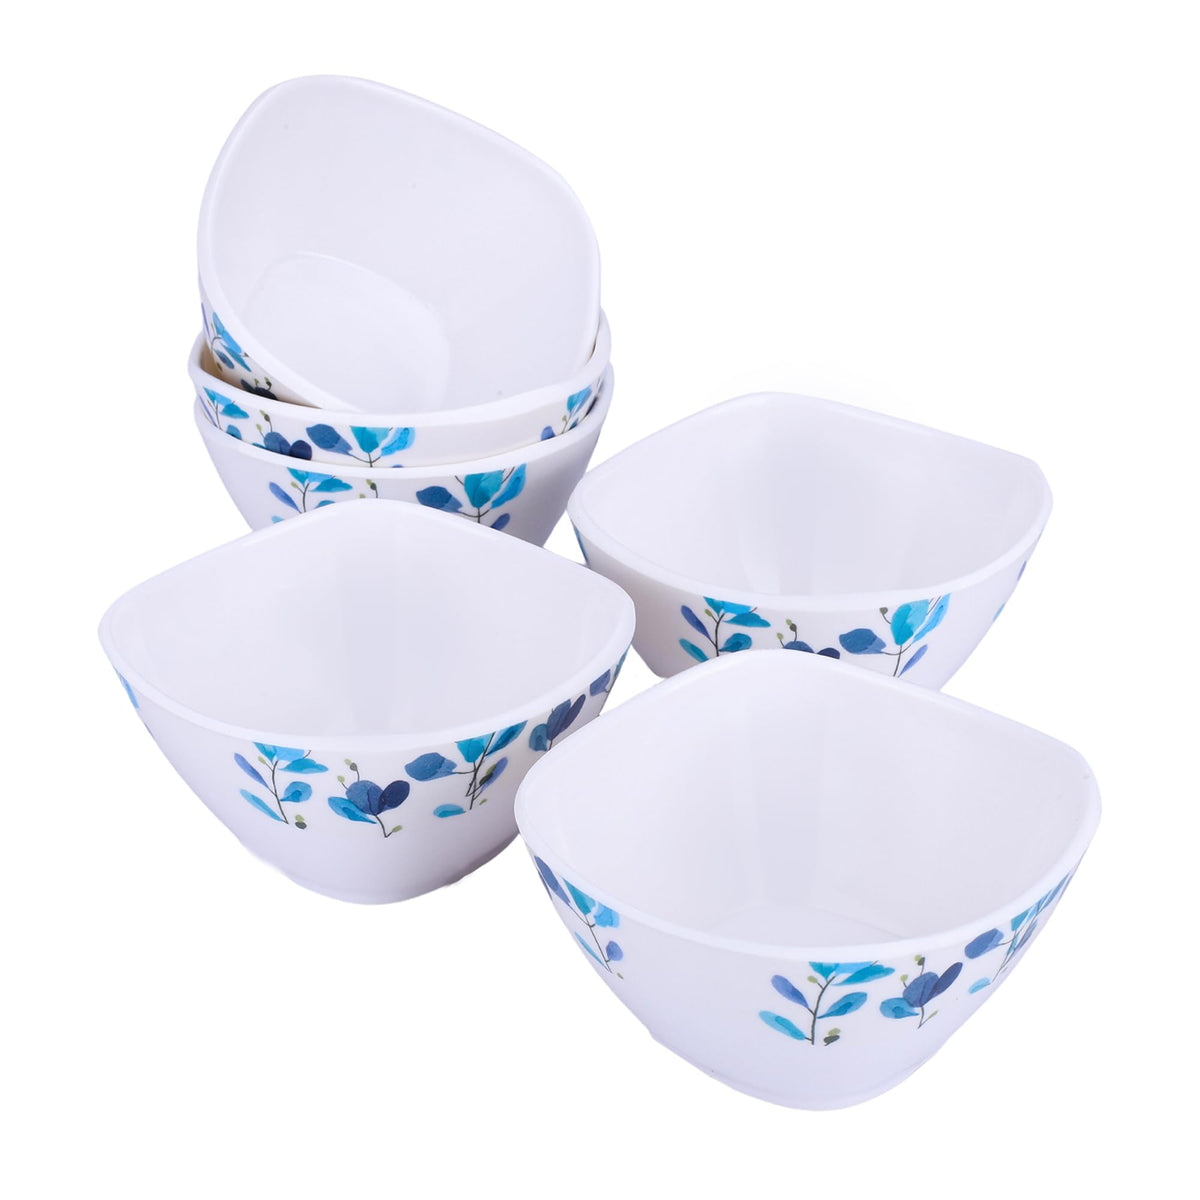 USHA SHRIRAM Melamine (220ml) Square Veg Bowl Set |Fibre Plastic Snack Dessert Vegetable Bowl | Heat Resistant| Durable Shatter Resistant| Light Weight| BPA Free (Blue Flower, 6 Pcs)